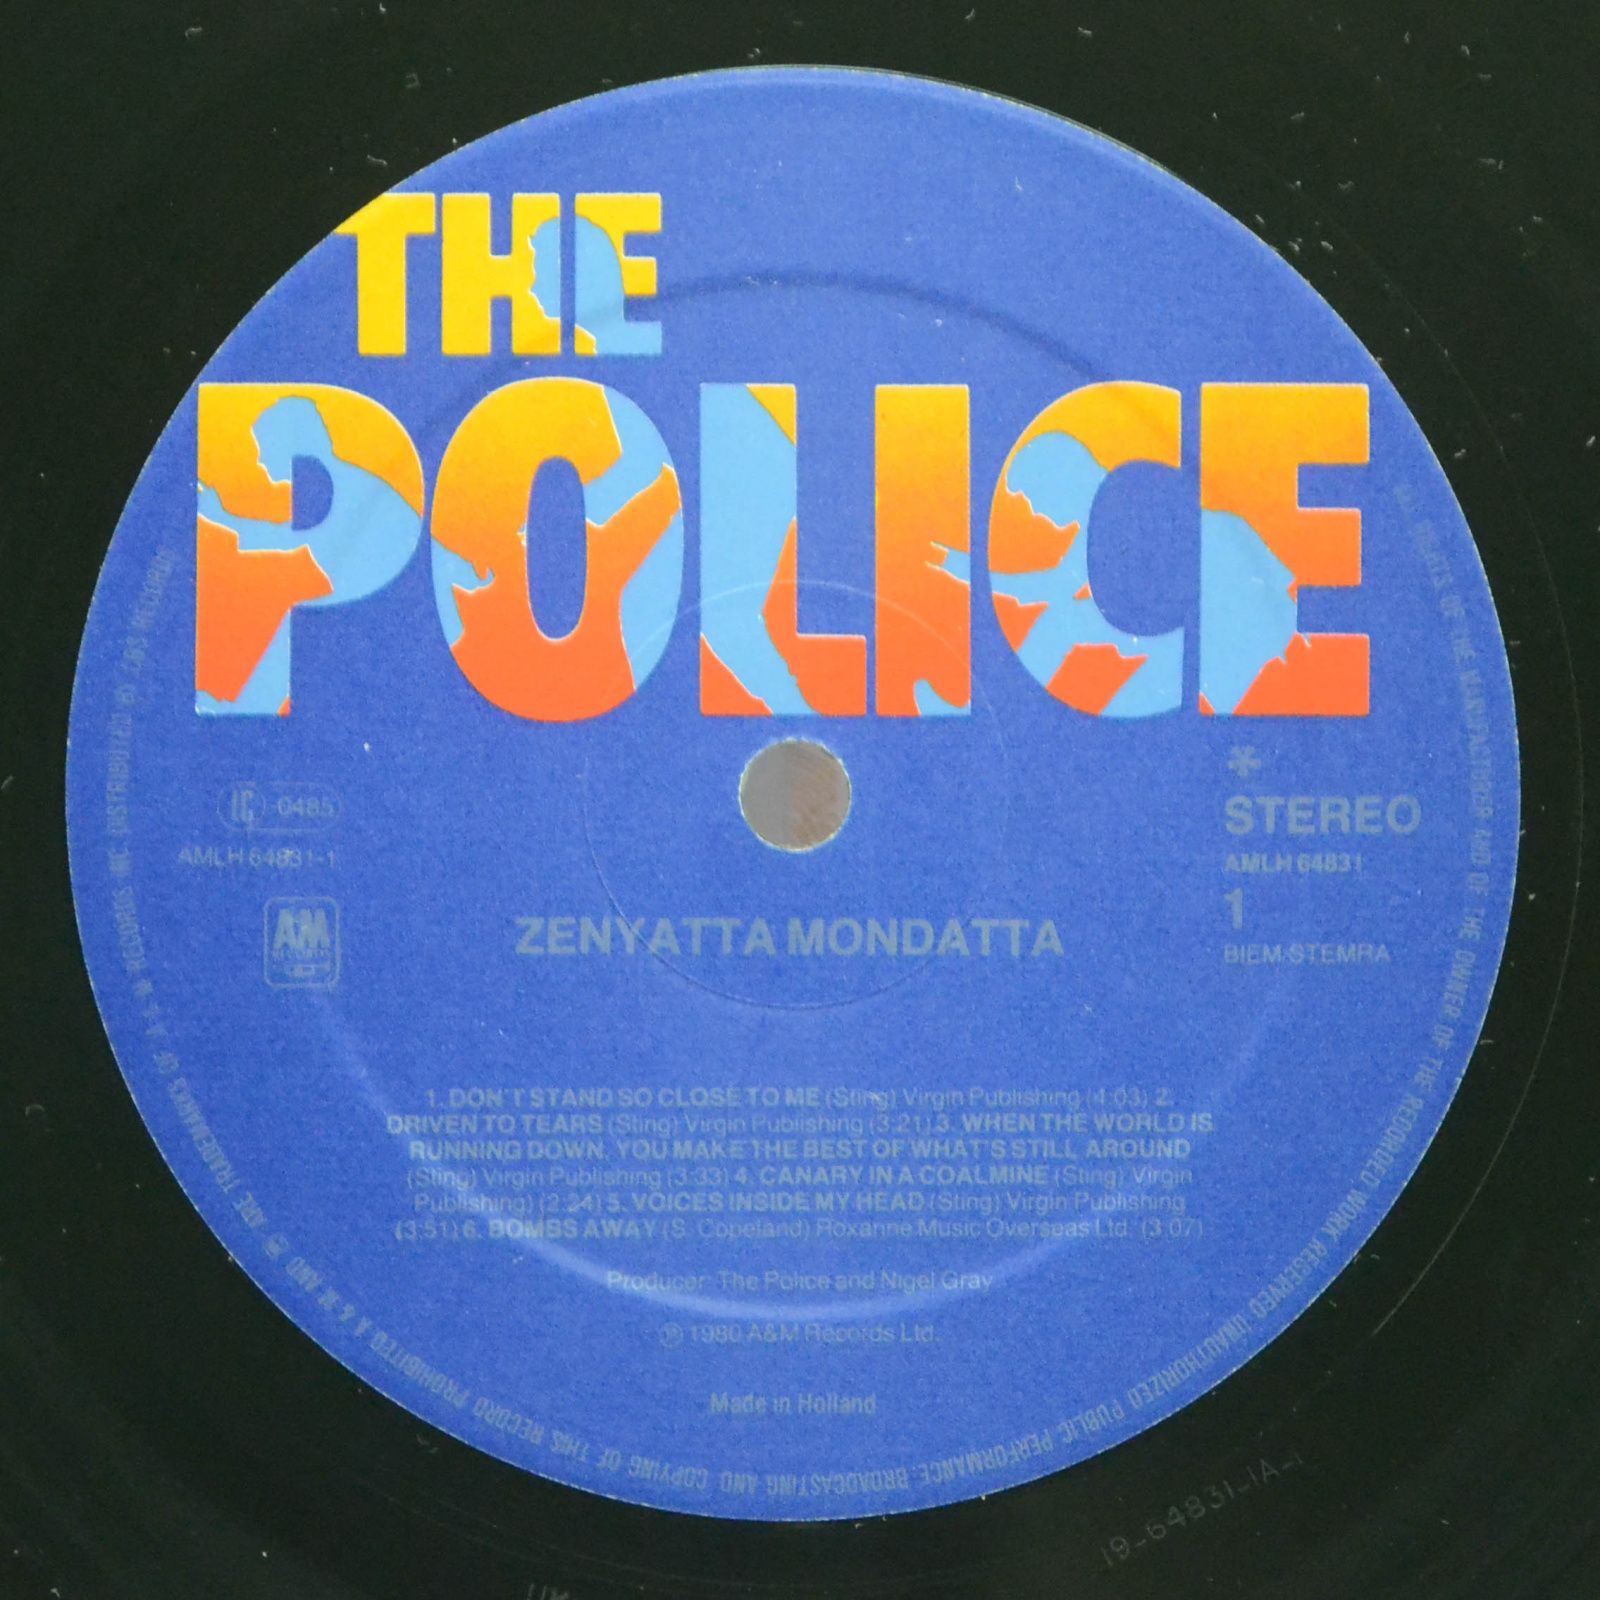 Police — Zenyatta Mondatta, 1980